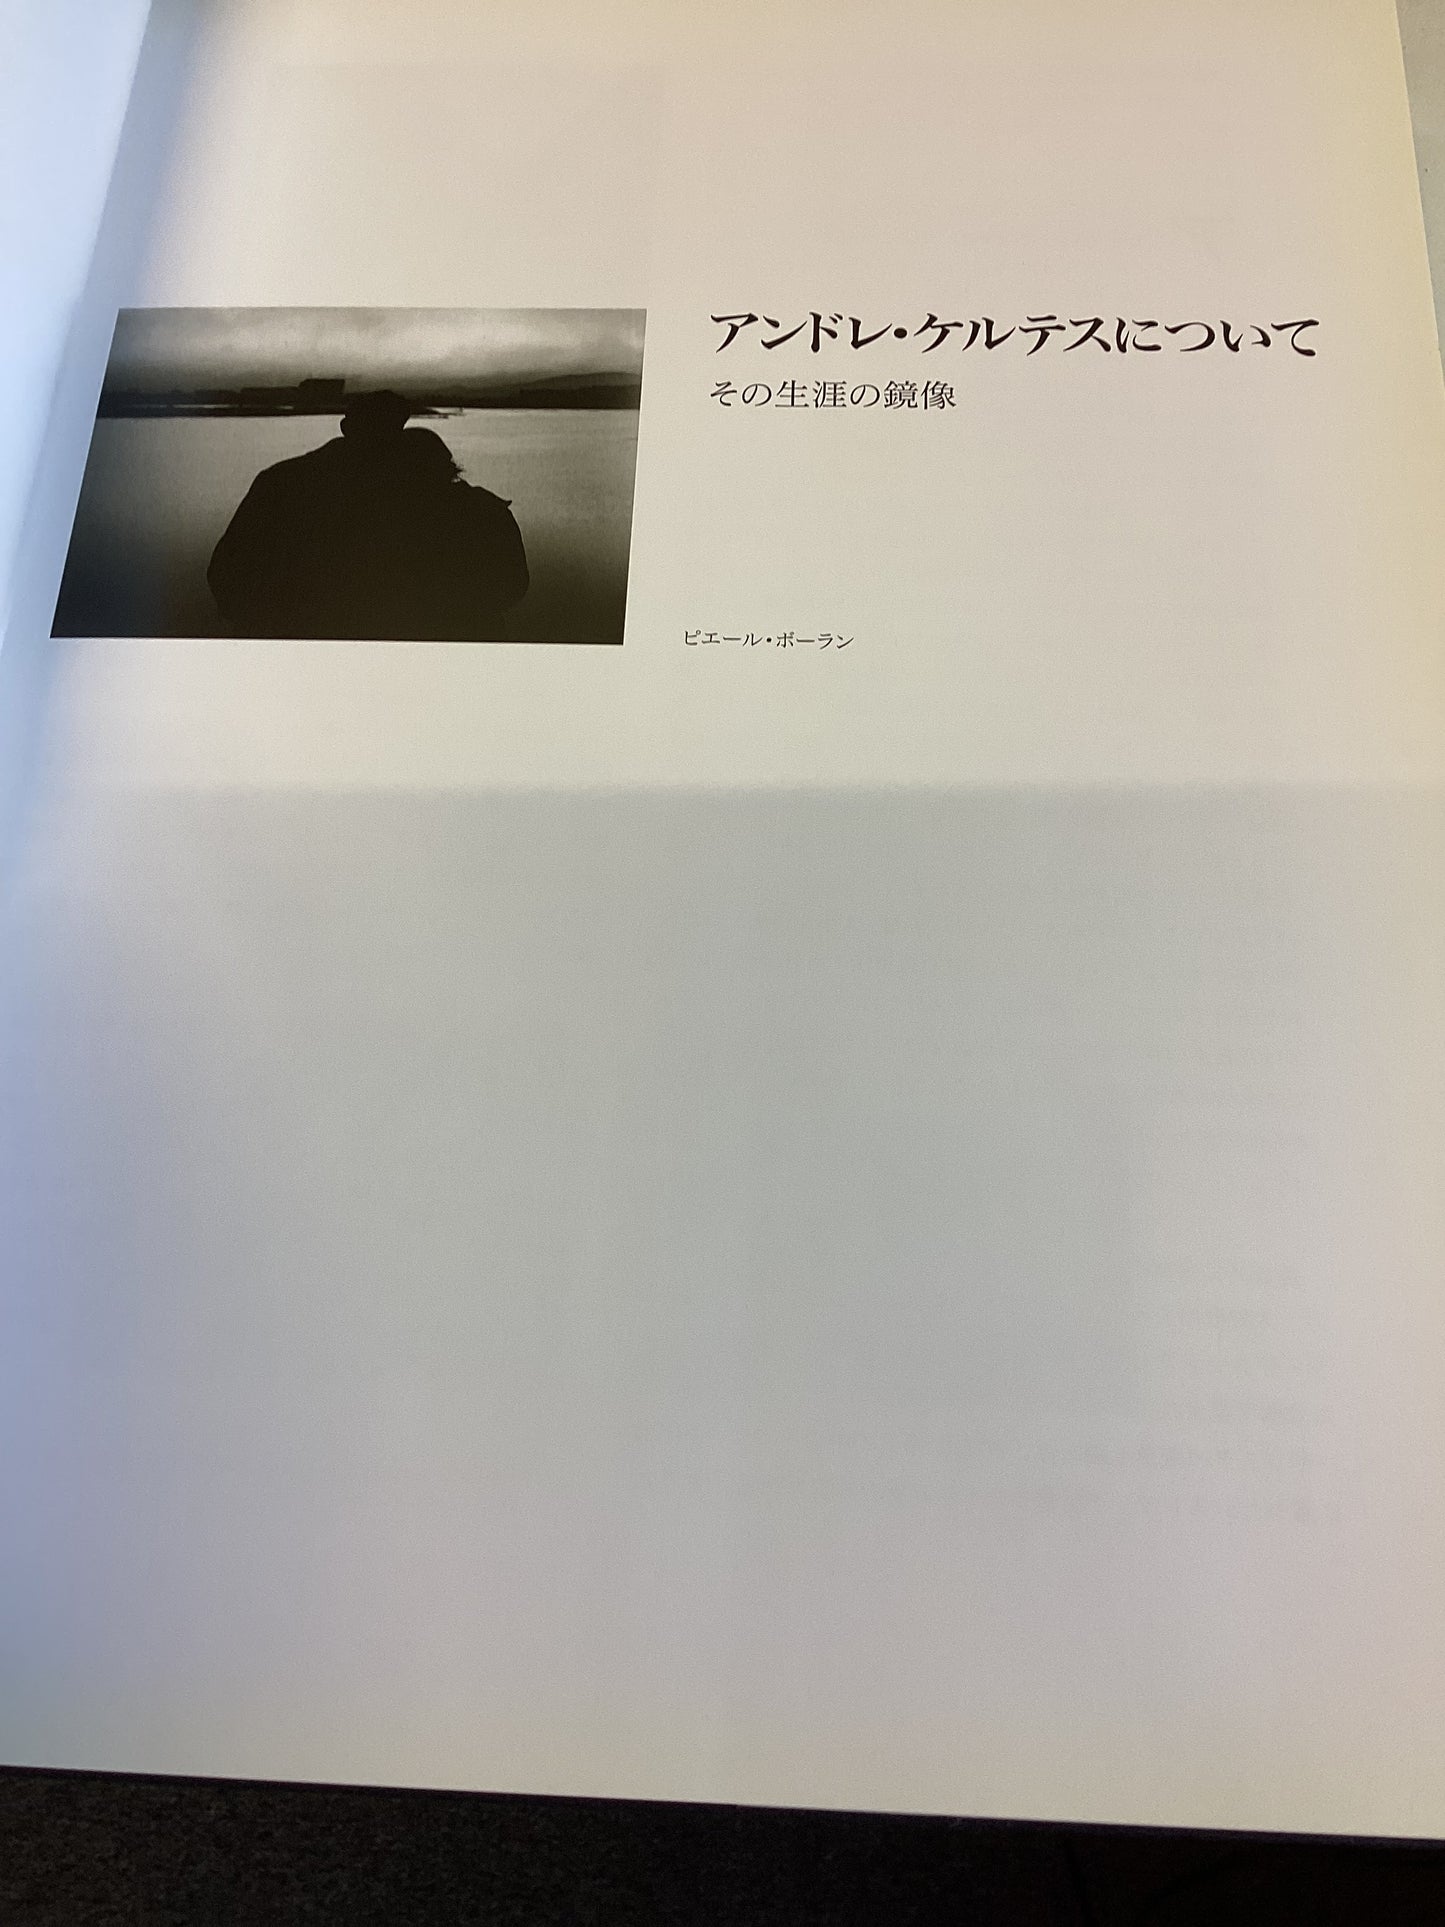 Andre Kertesz Exhibition  Catalog 1995 Japanese